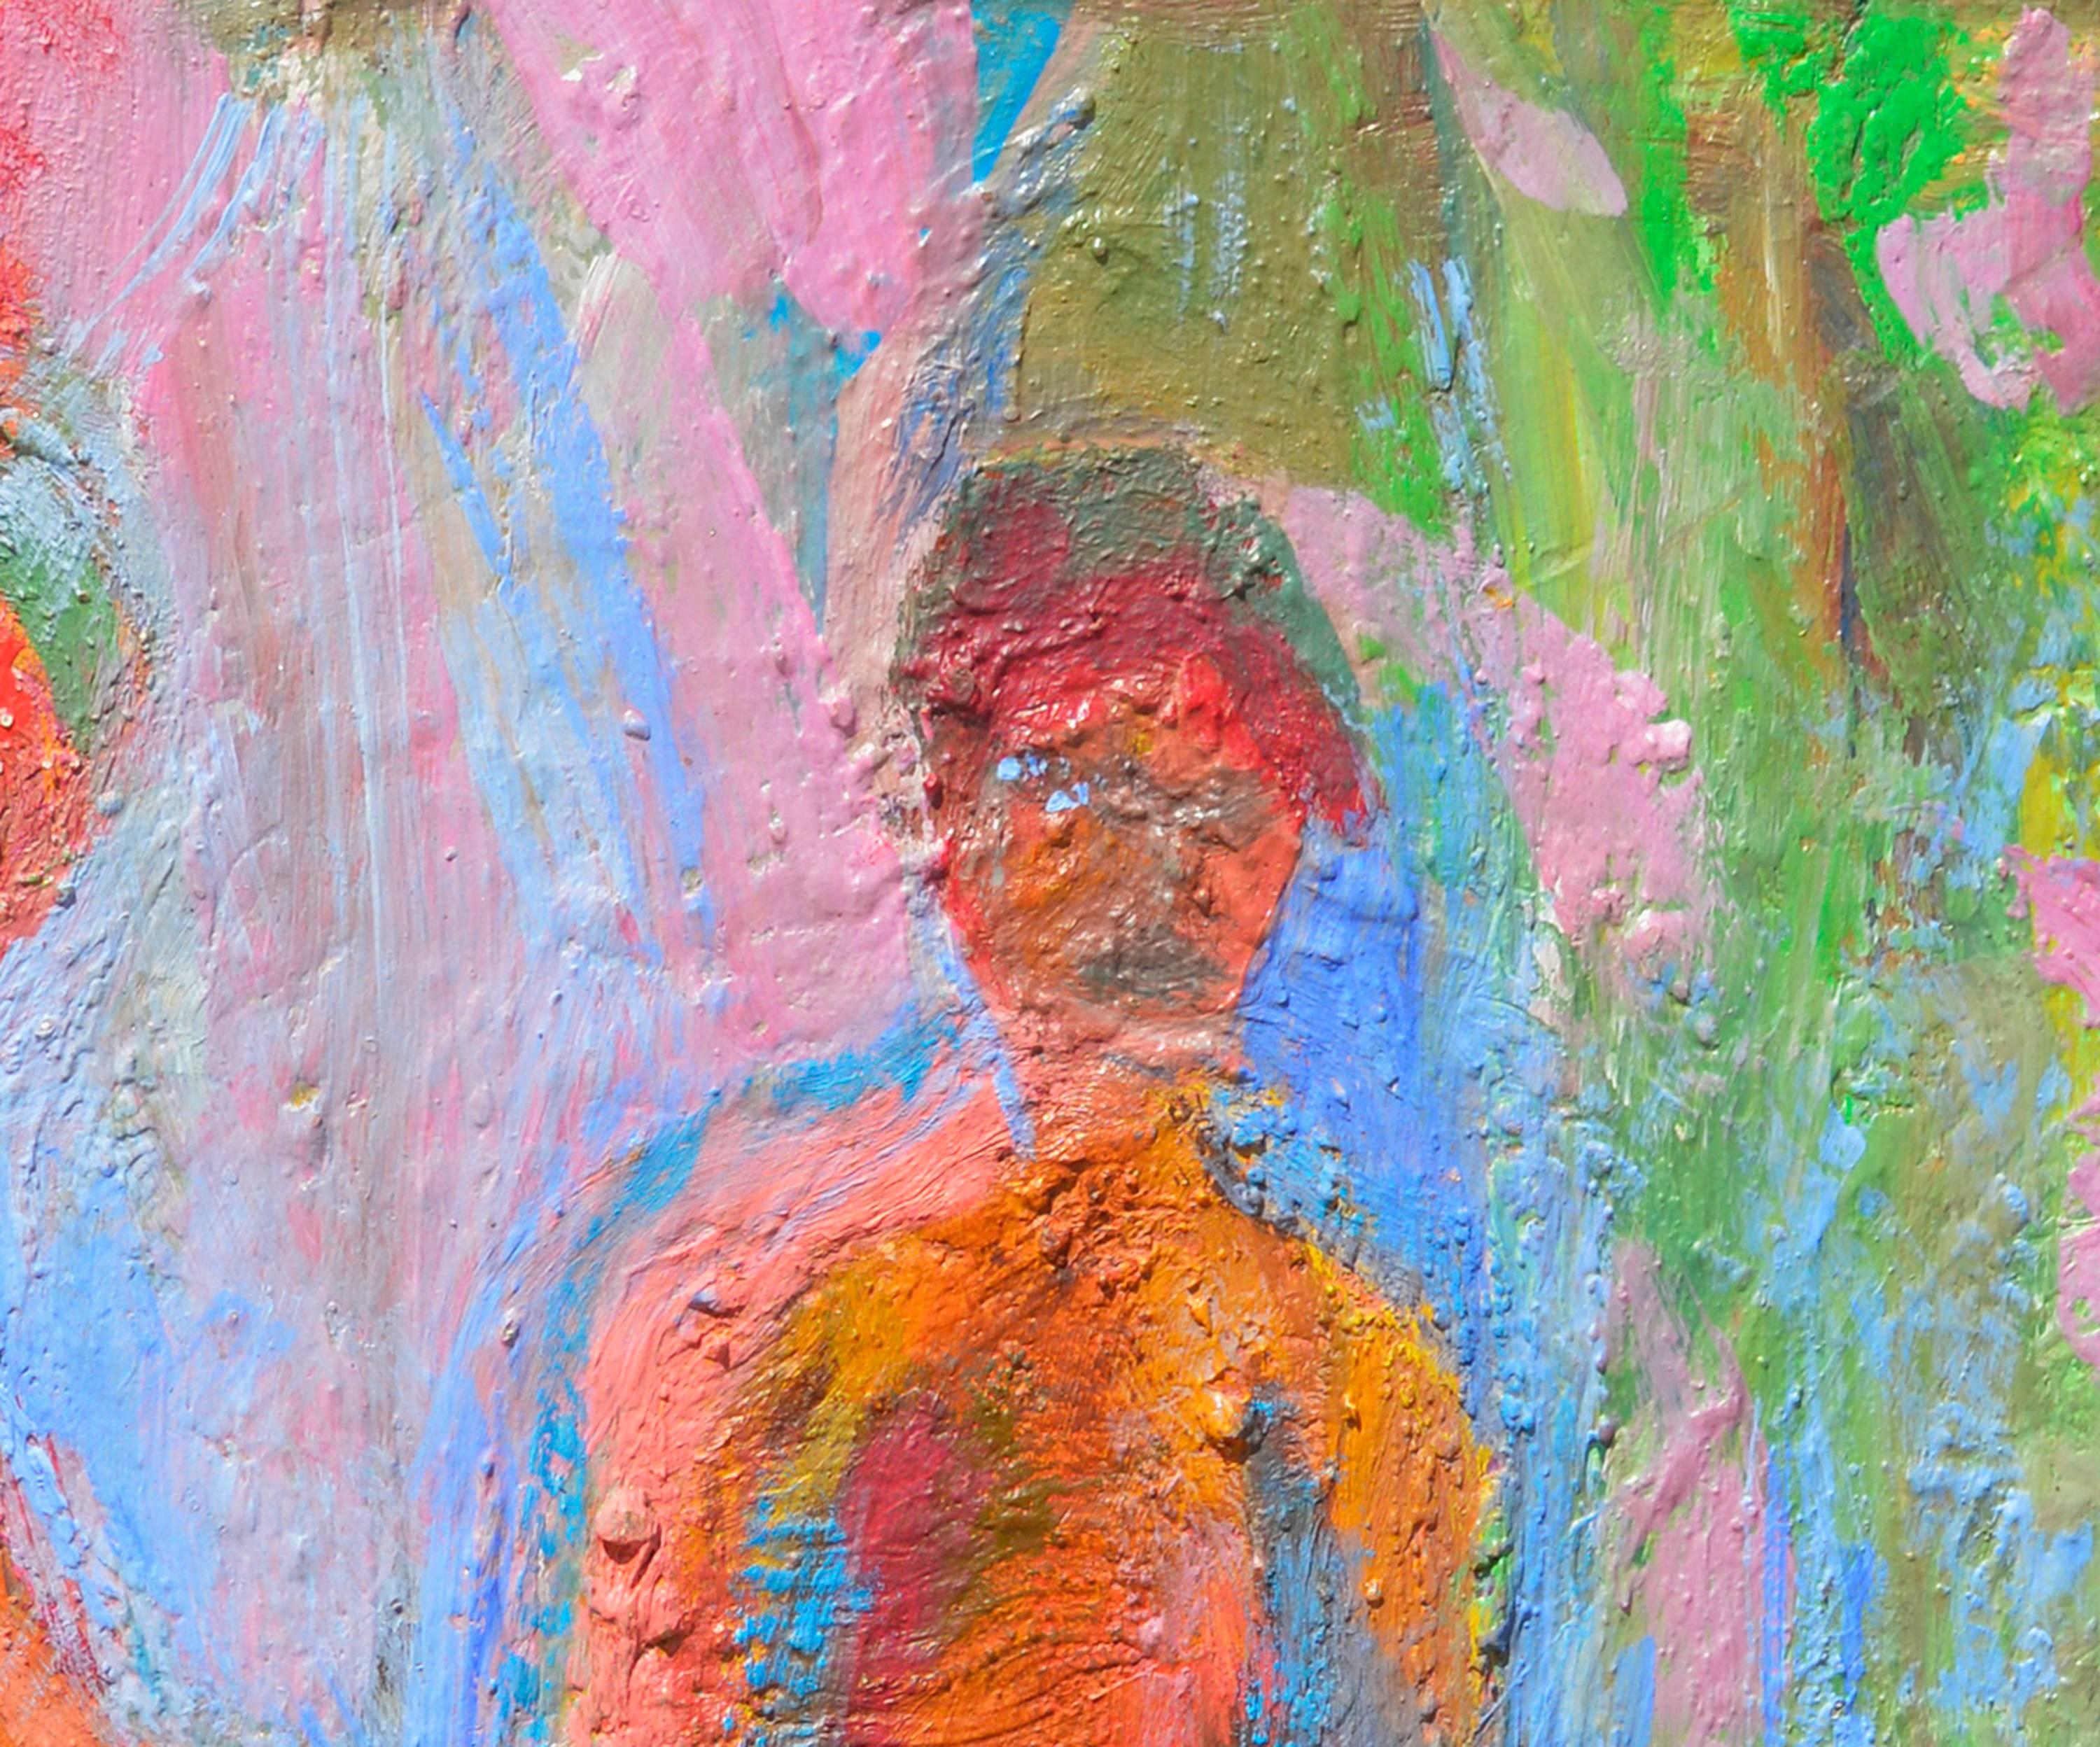 Figurative abstraite colorée d'un couple au matin par Kristin Cohen (américaine, née en 1963). La merveilleuse texture ajoute de la profondeur et de l'intérêt. Artiste expressionniste abstraite californienne, Kristin a étudié à la Humbolt State